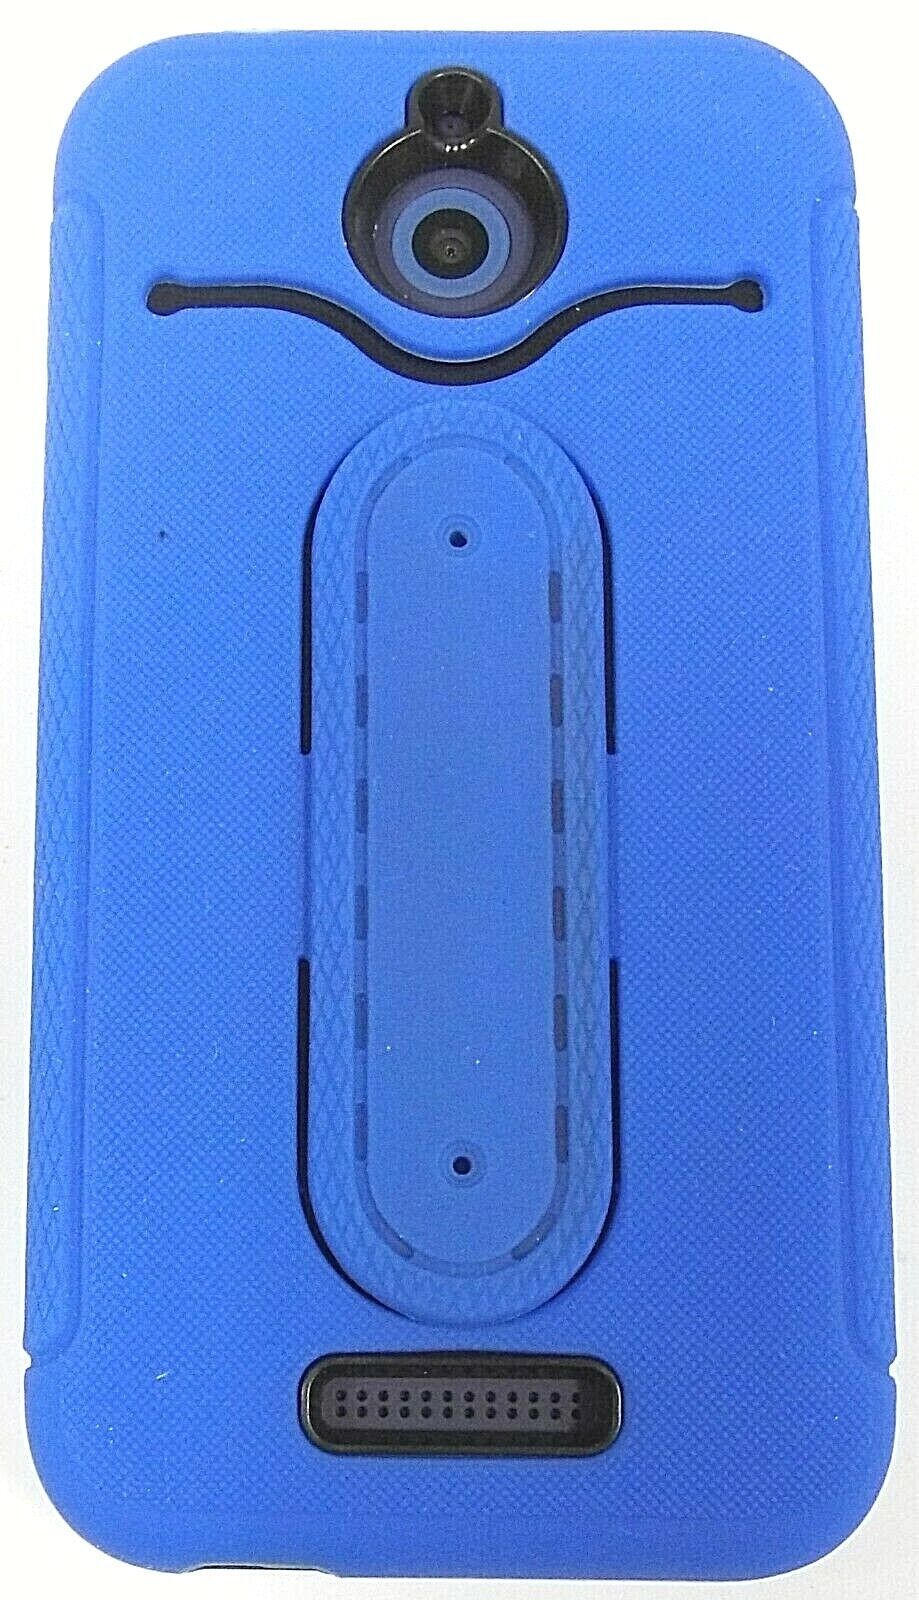 HTC Desire 510 - Deep Navy Blue ( Sprint ) Android Smartphone - Bundled HTC HTC Desire 510 - фотография #5